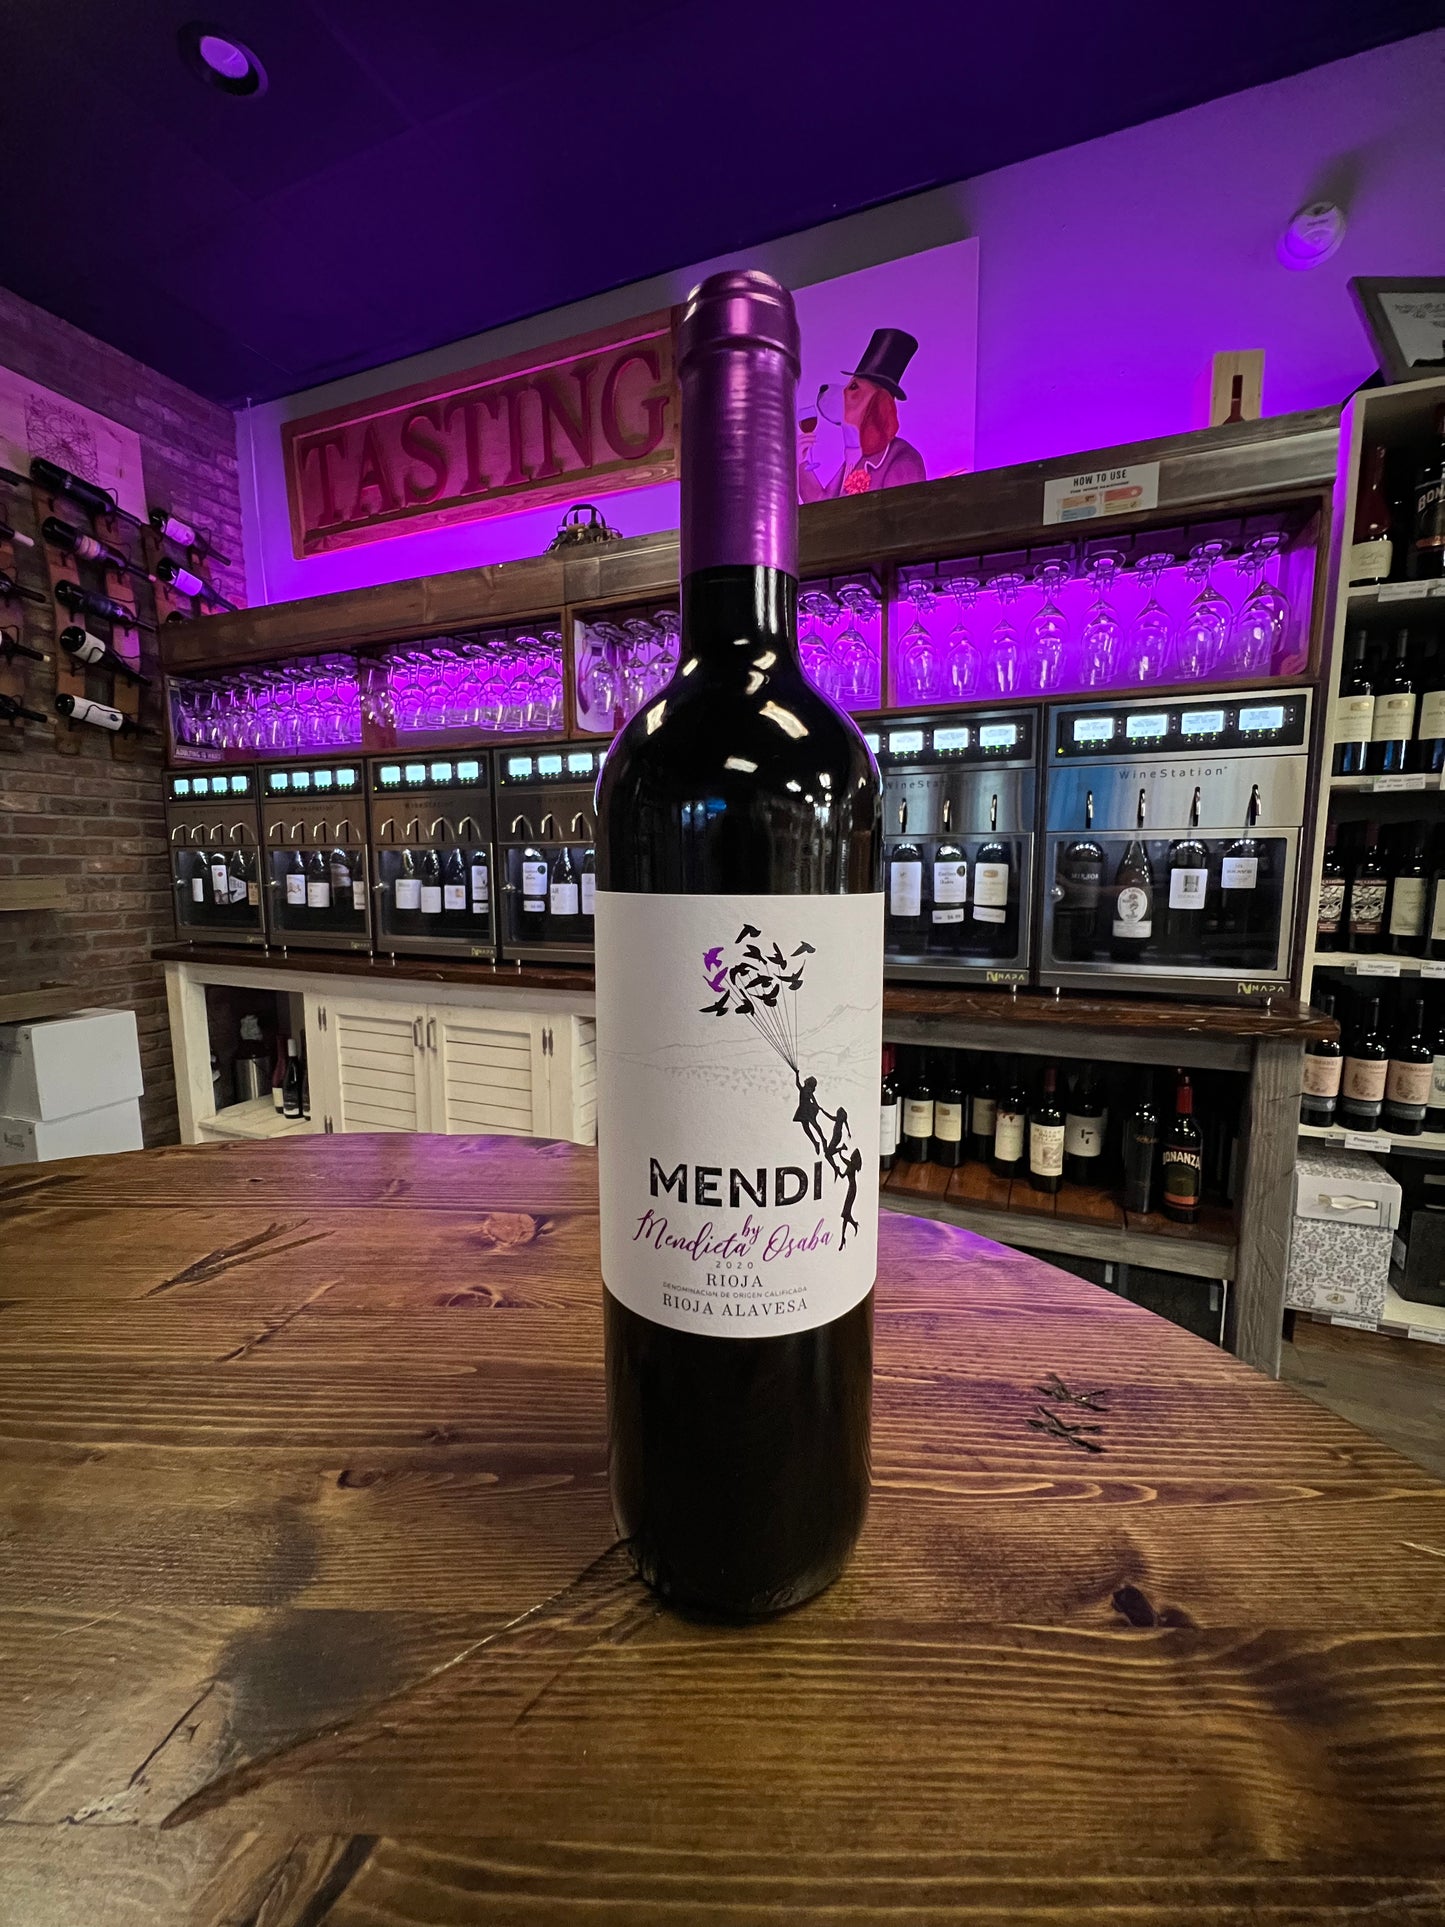 Mendi [Rioja] Tempranillo (2020)